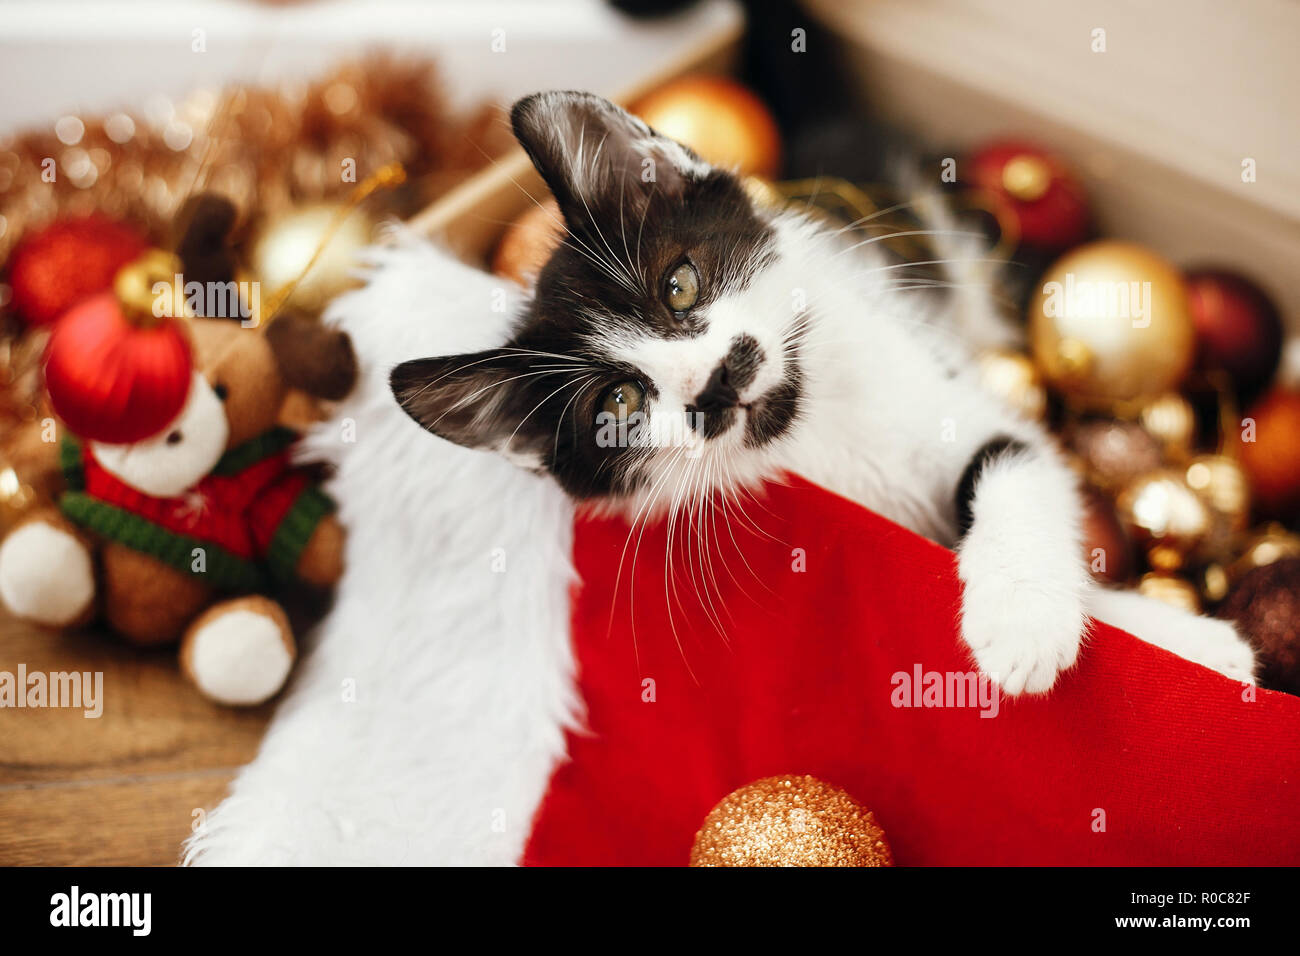 Cute Kitty spielen mit roten und goldenen Kugeln in Feld, Ornamente und Santa hat unter dem Weihnachtsbaum in festlichem Zimmer. Frohe Weihnachten Konzept. Adorable f Stockfoto